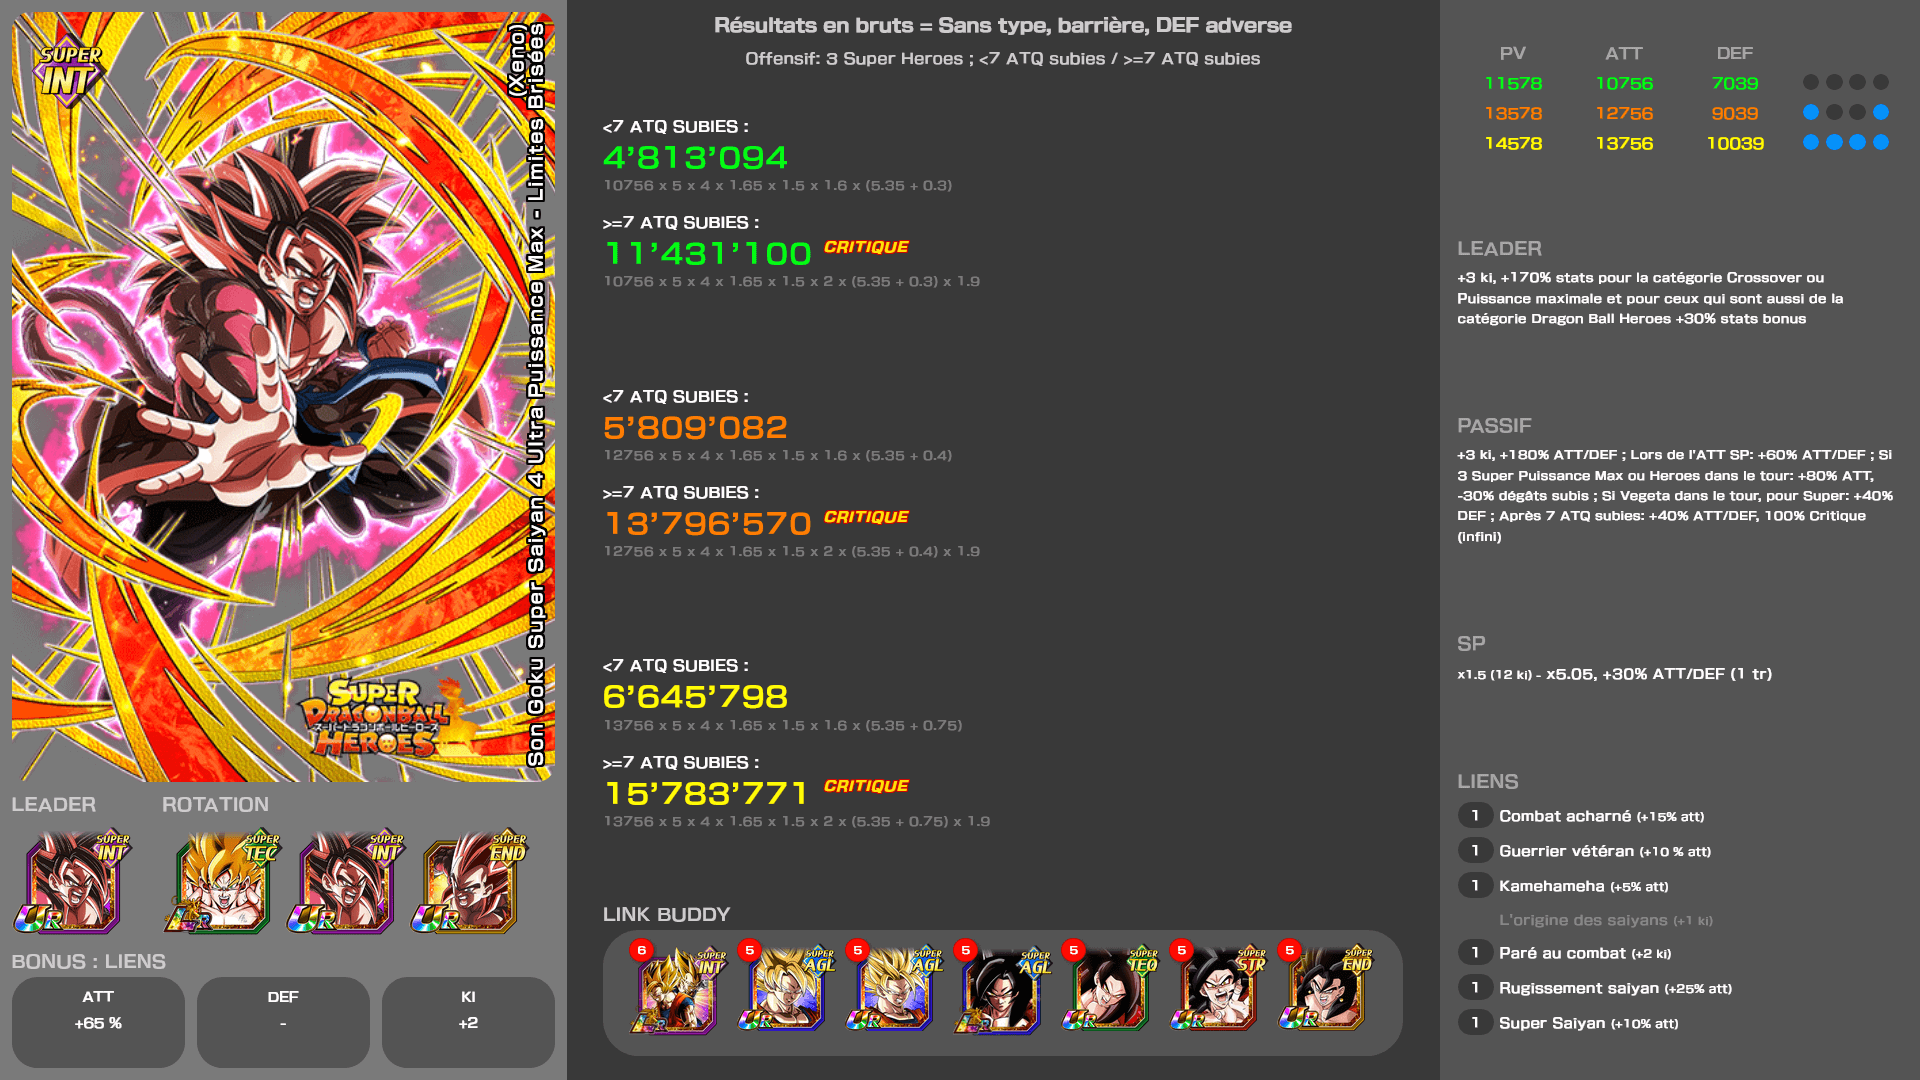 Fiche n°2 Son Goku Super Saiyan 4 Ultra Puissance Max - Limites Brisées (Xeno)Percée dans la quête pour la victoire